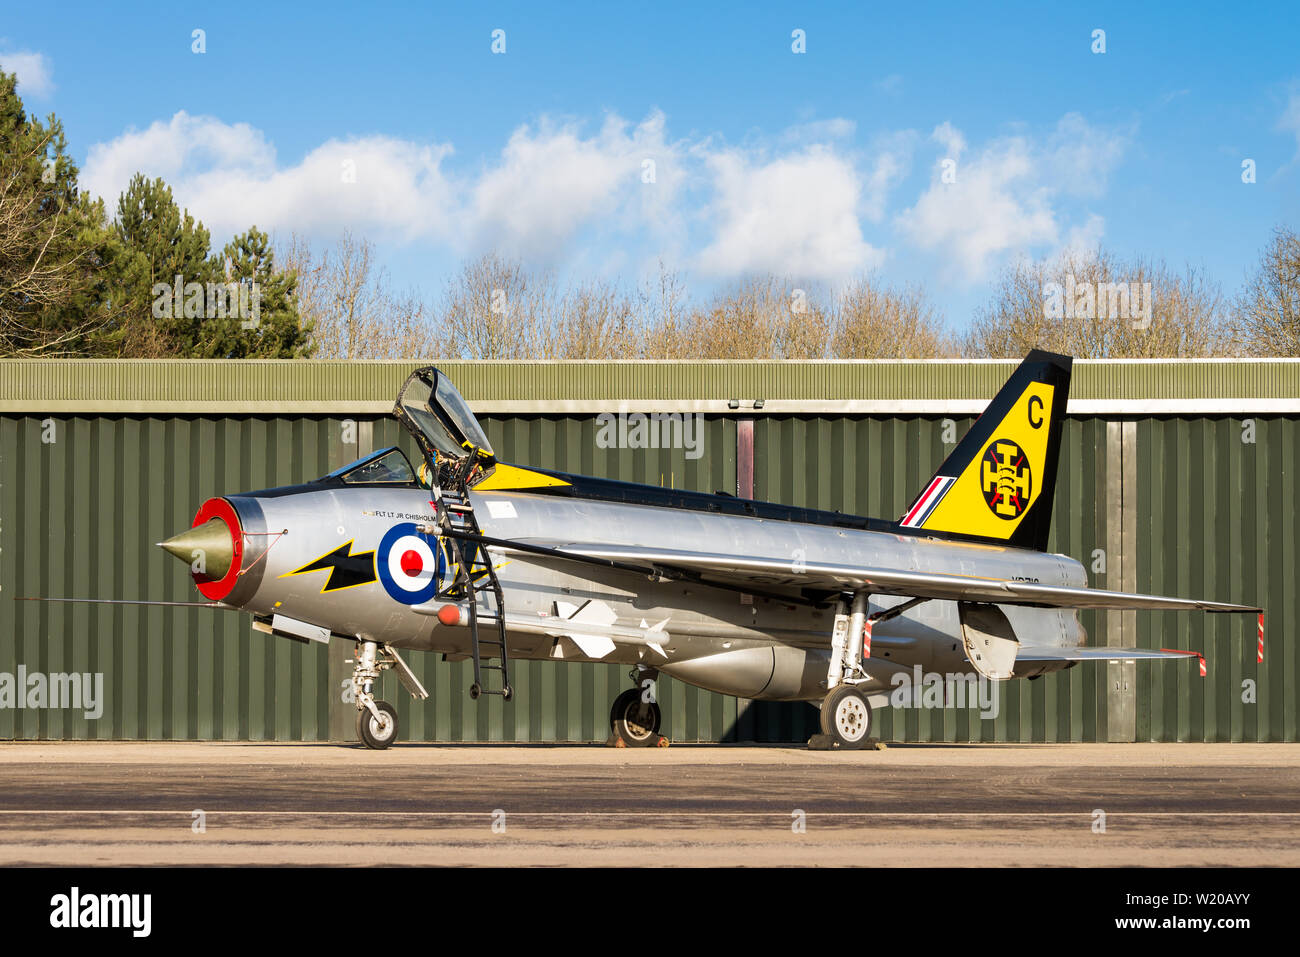 Un English Electric Lightning Guerre froide en avion de chasse de la Royal Air Force à l'aérodrome et de Bruntingthorpe Proving Ground. Banque D'Images